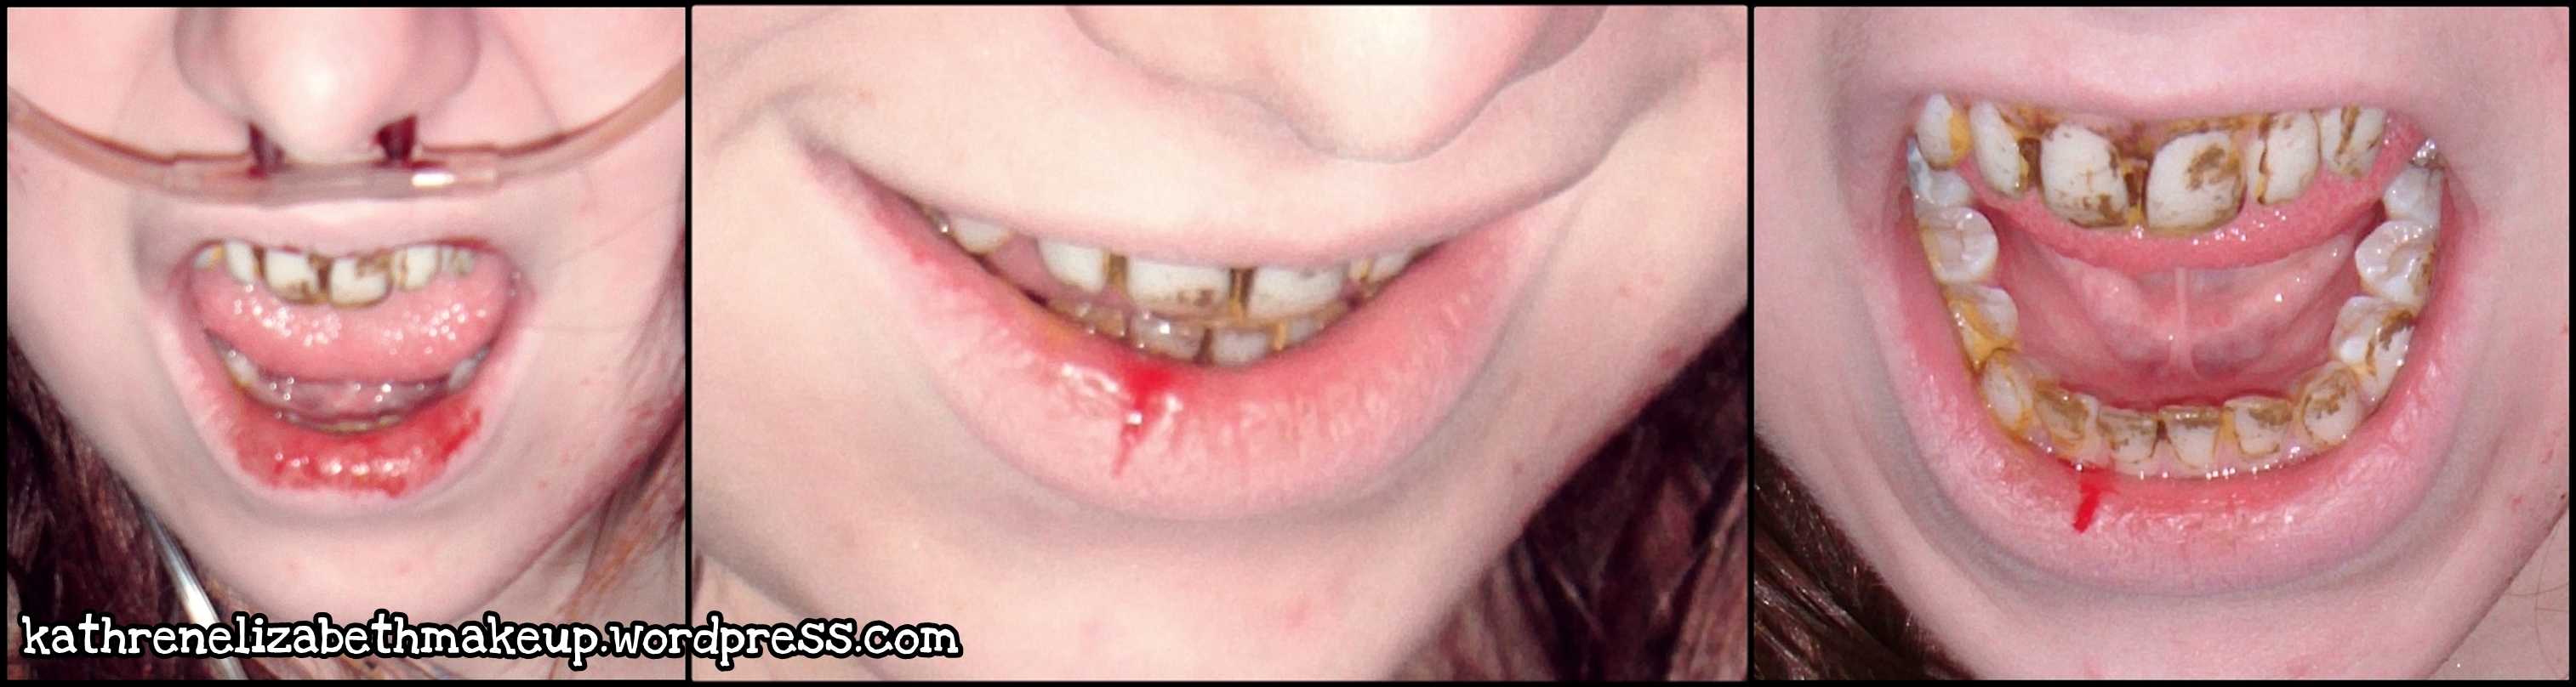 Tooth Enamel: Loss, Erosion, and Repair